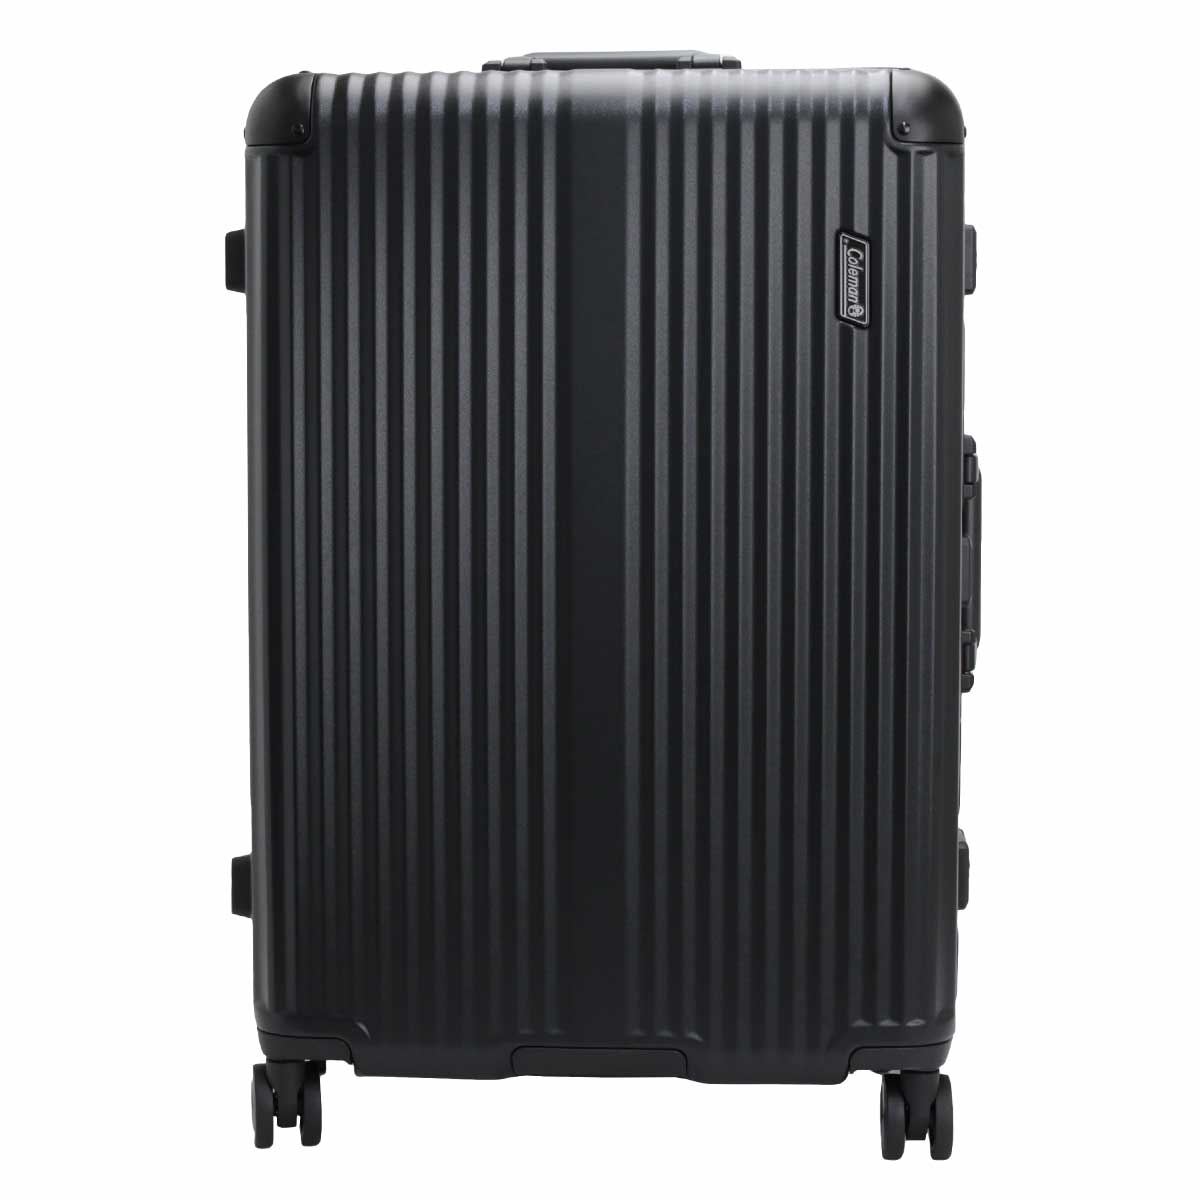 Coleman コールマン キャリーバッグ 大容量 スーツケース LLサイズ フレームキャリー27インチ ハード 旅行 バッグ キャリーケース 大型  フレーム キャリー